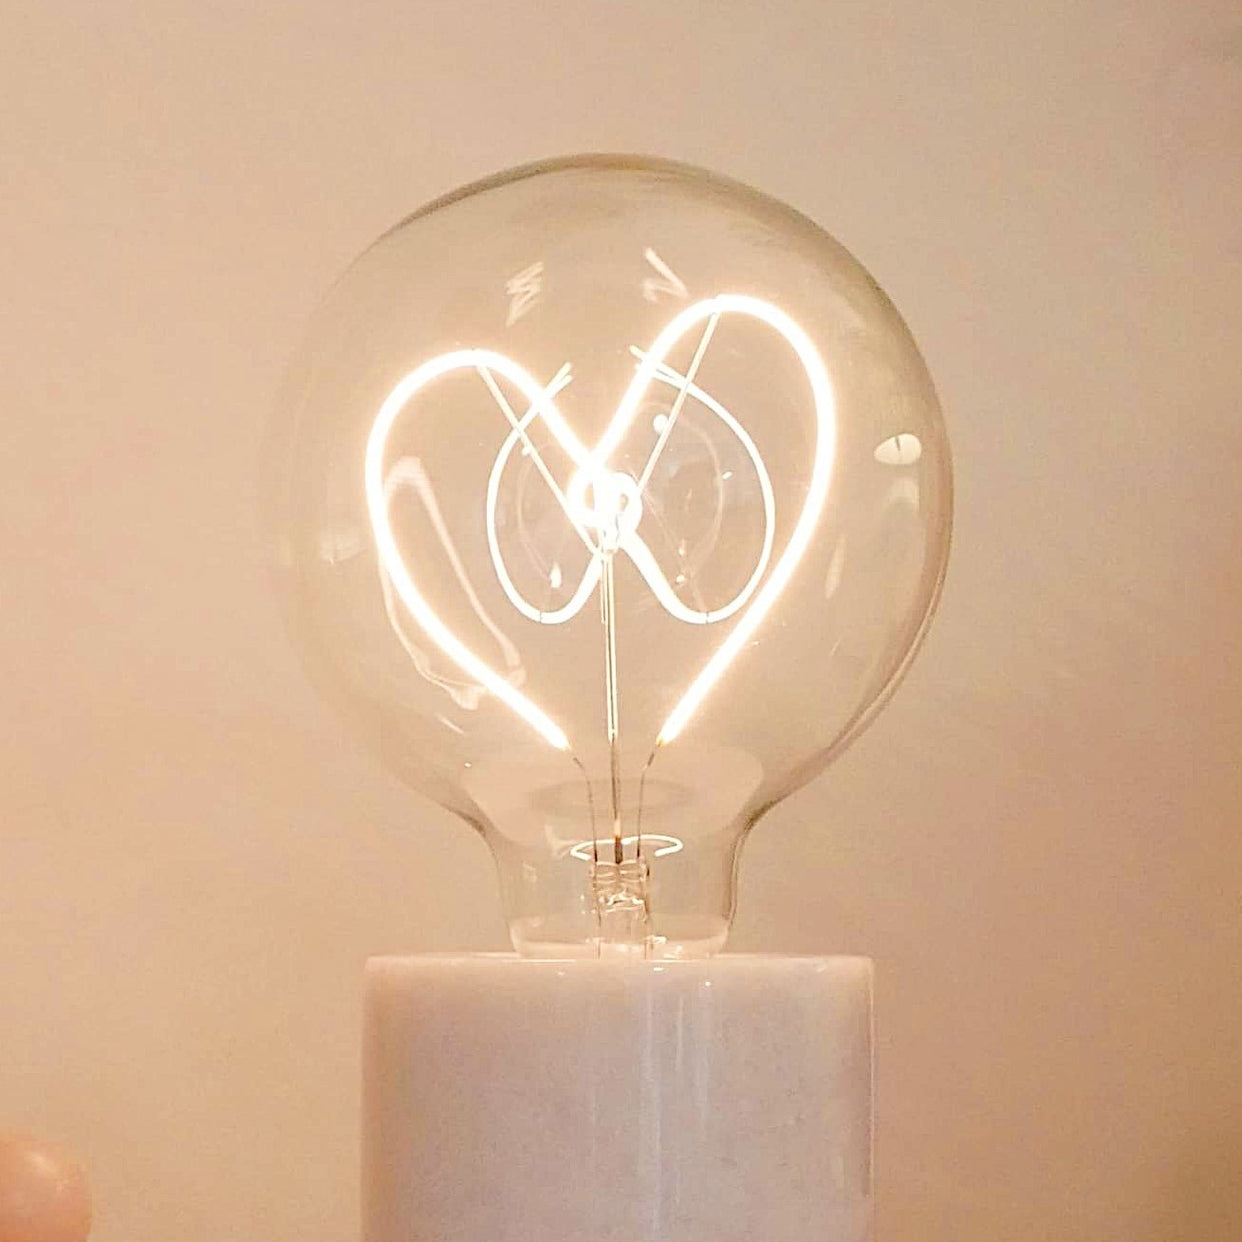 Bombilla de luz LED blanca con forma de corazón - Montaje de mesa con rosca - E27 Edison regulable